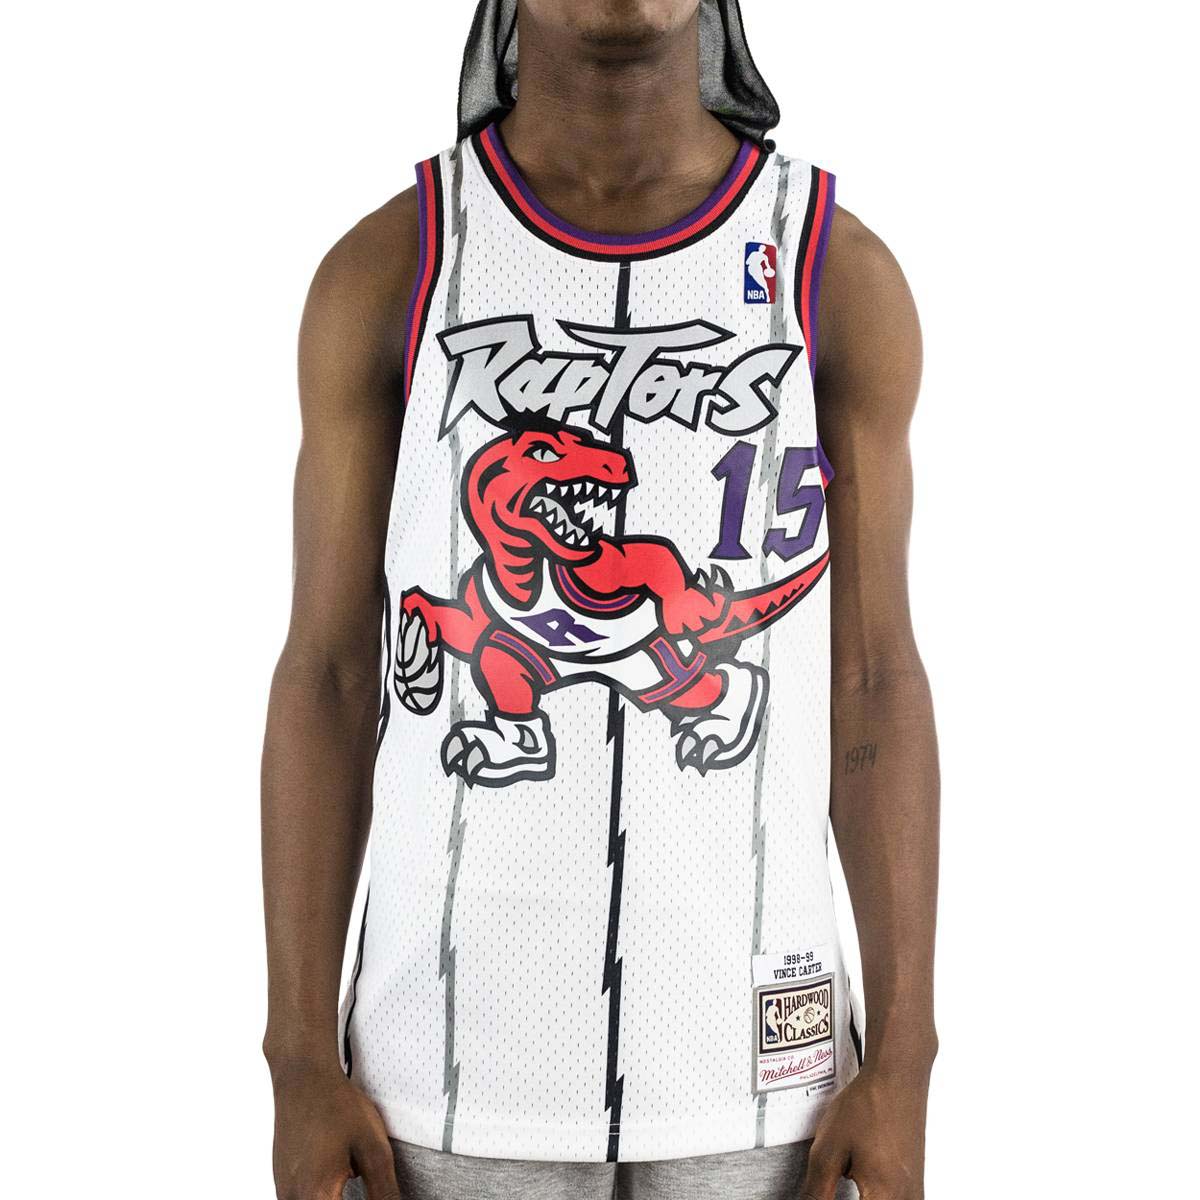 Mitchell & Ness Raptors 98 Vince Carter Jersey SMJYGS18213-TRAWHIT98VCA